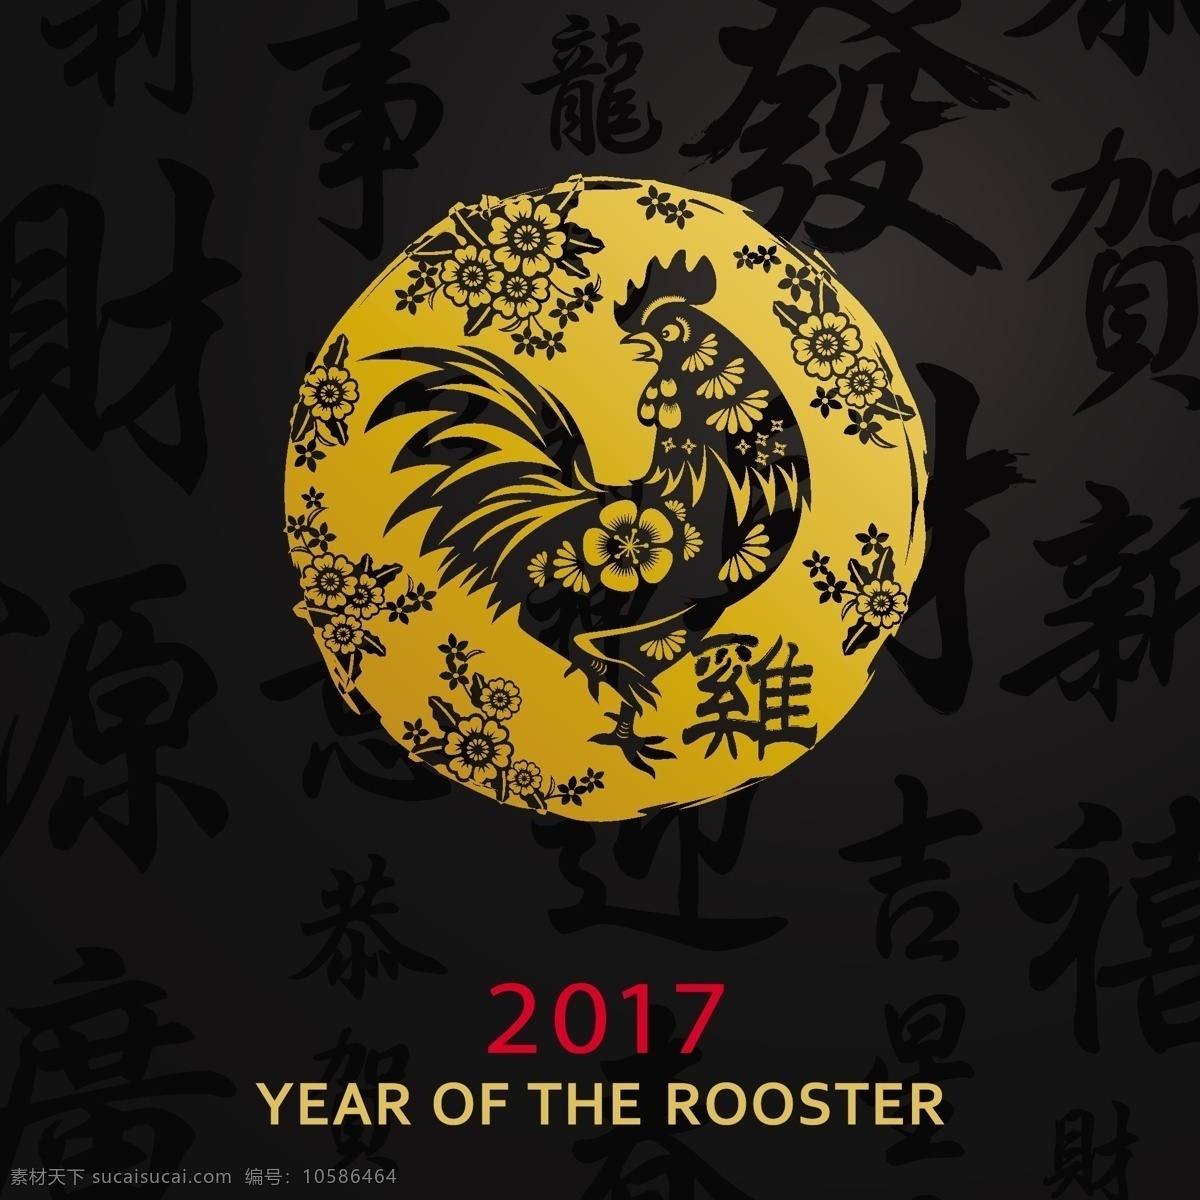 2017 金色 鸡年 主题 海报 矢量 设计素材 矢量背景 矢量素材